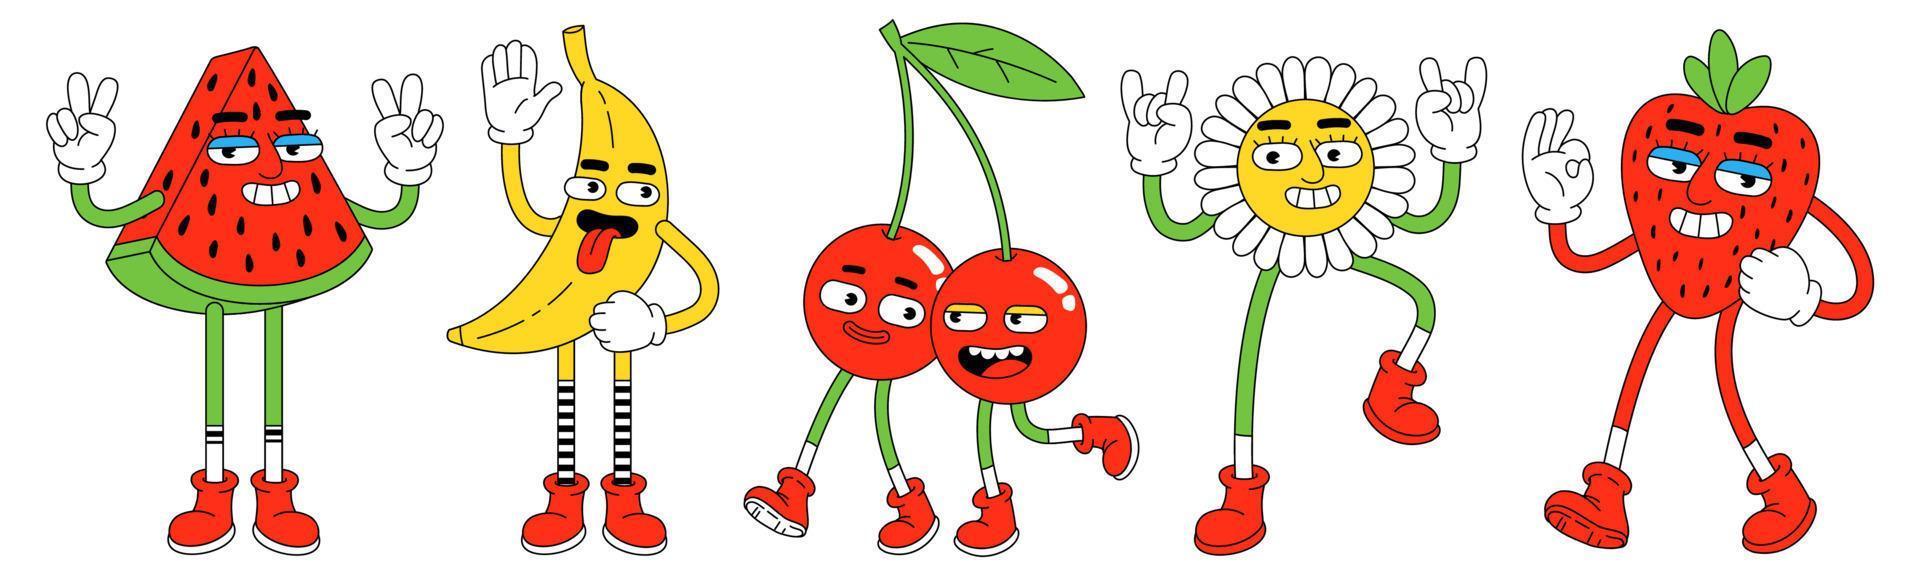 lustige charaktere im trendigen retro-cartoon-stil. Wassermelone, Banane, Kirsche, Erdbeere und Blume. vektor